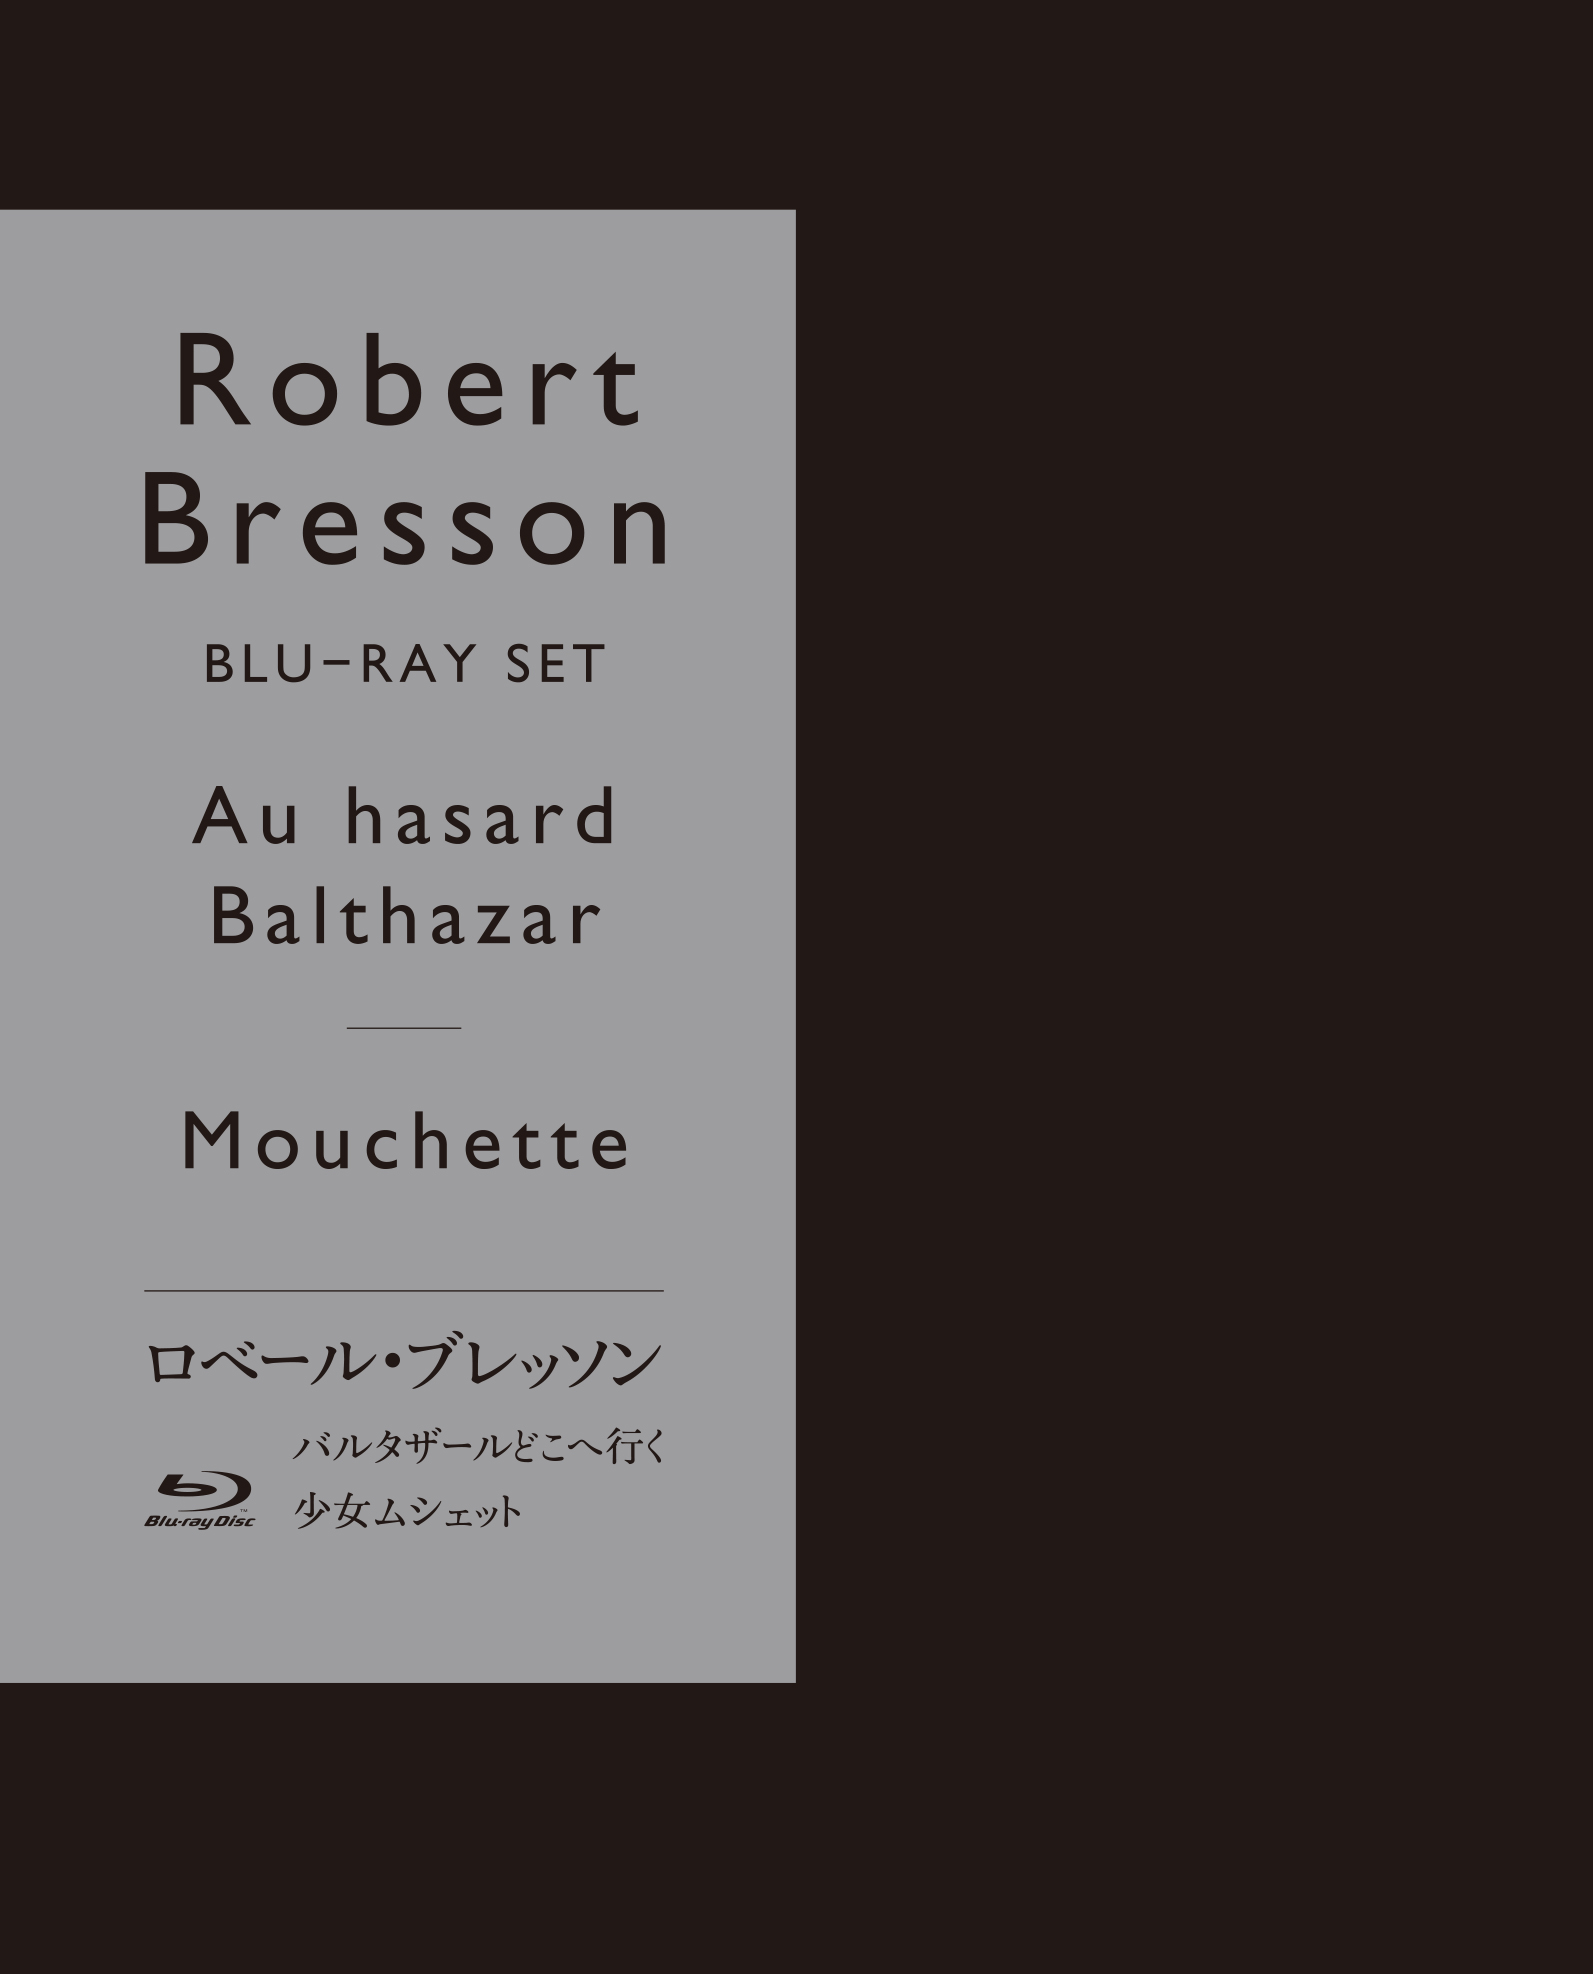 ロベール・ブレッソン『バルタザールどこへ行く』『少女ムシェット』初回限定生産セット